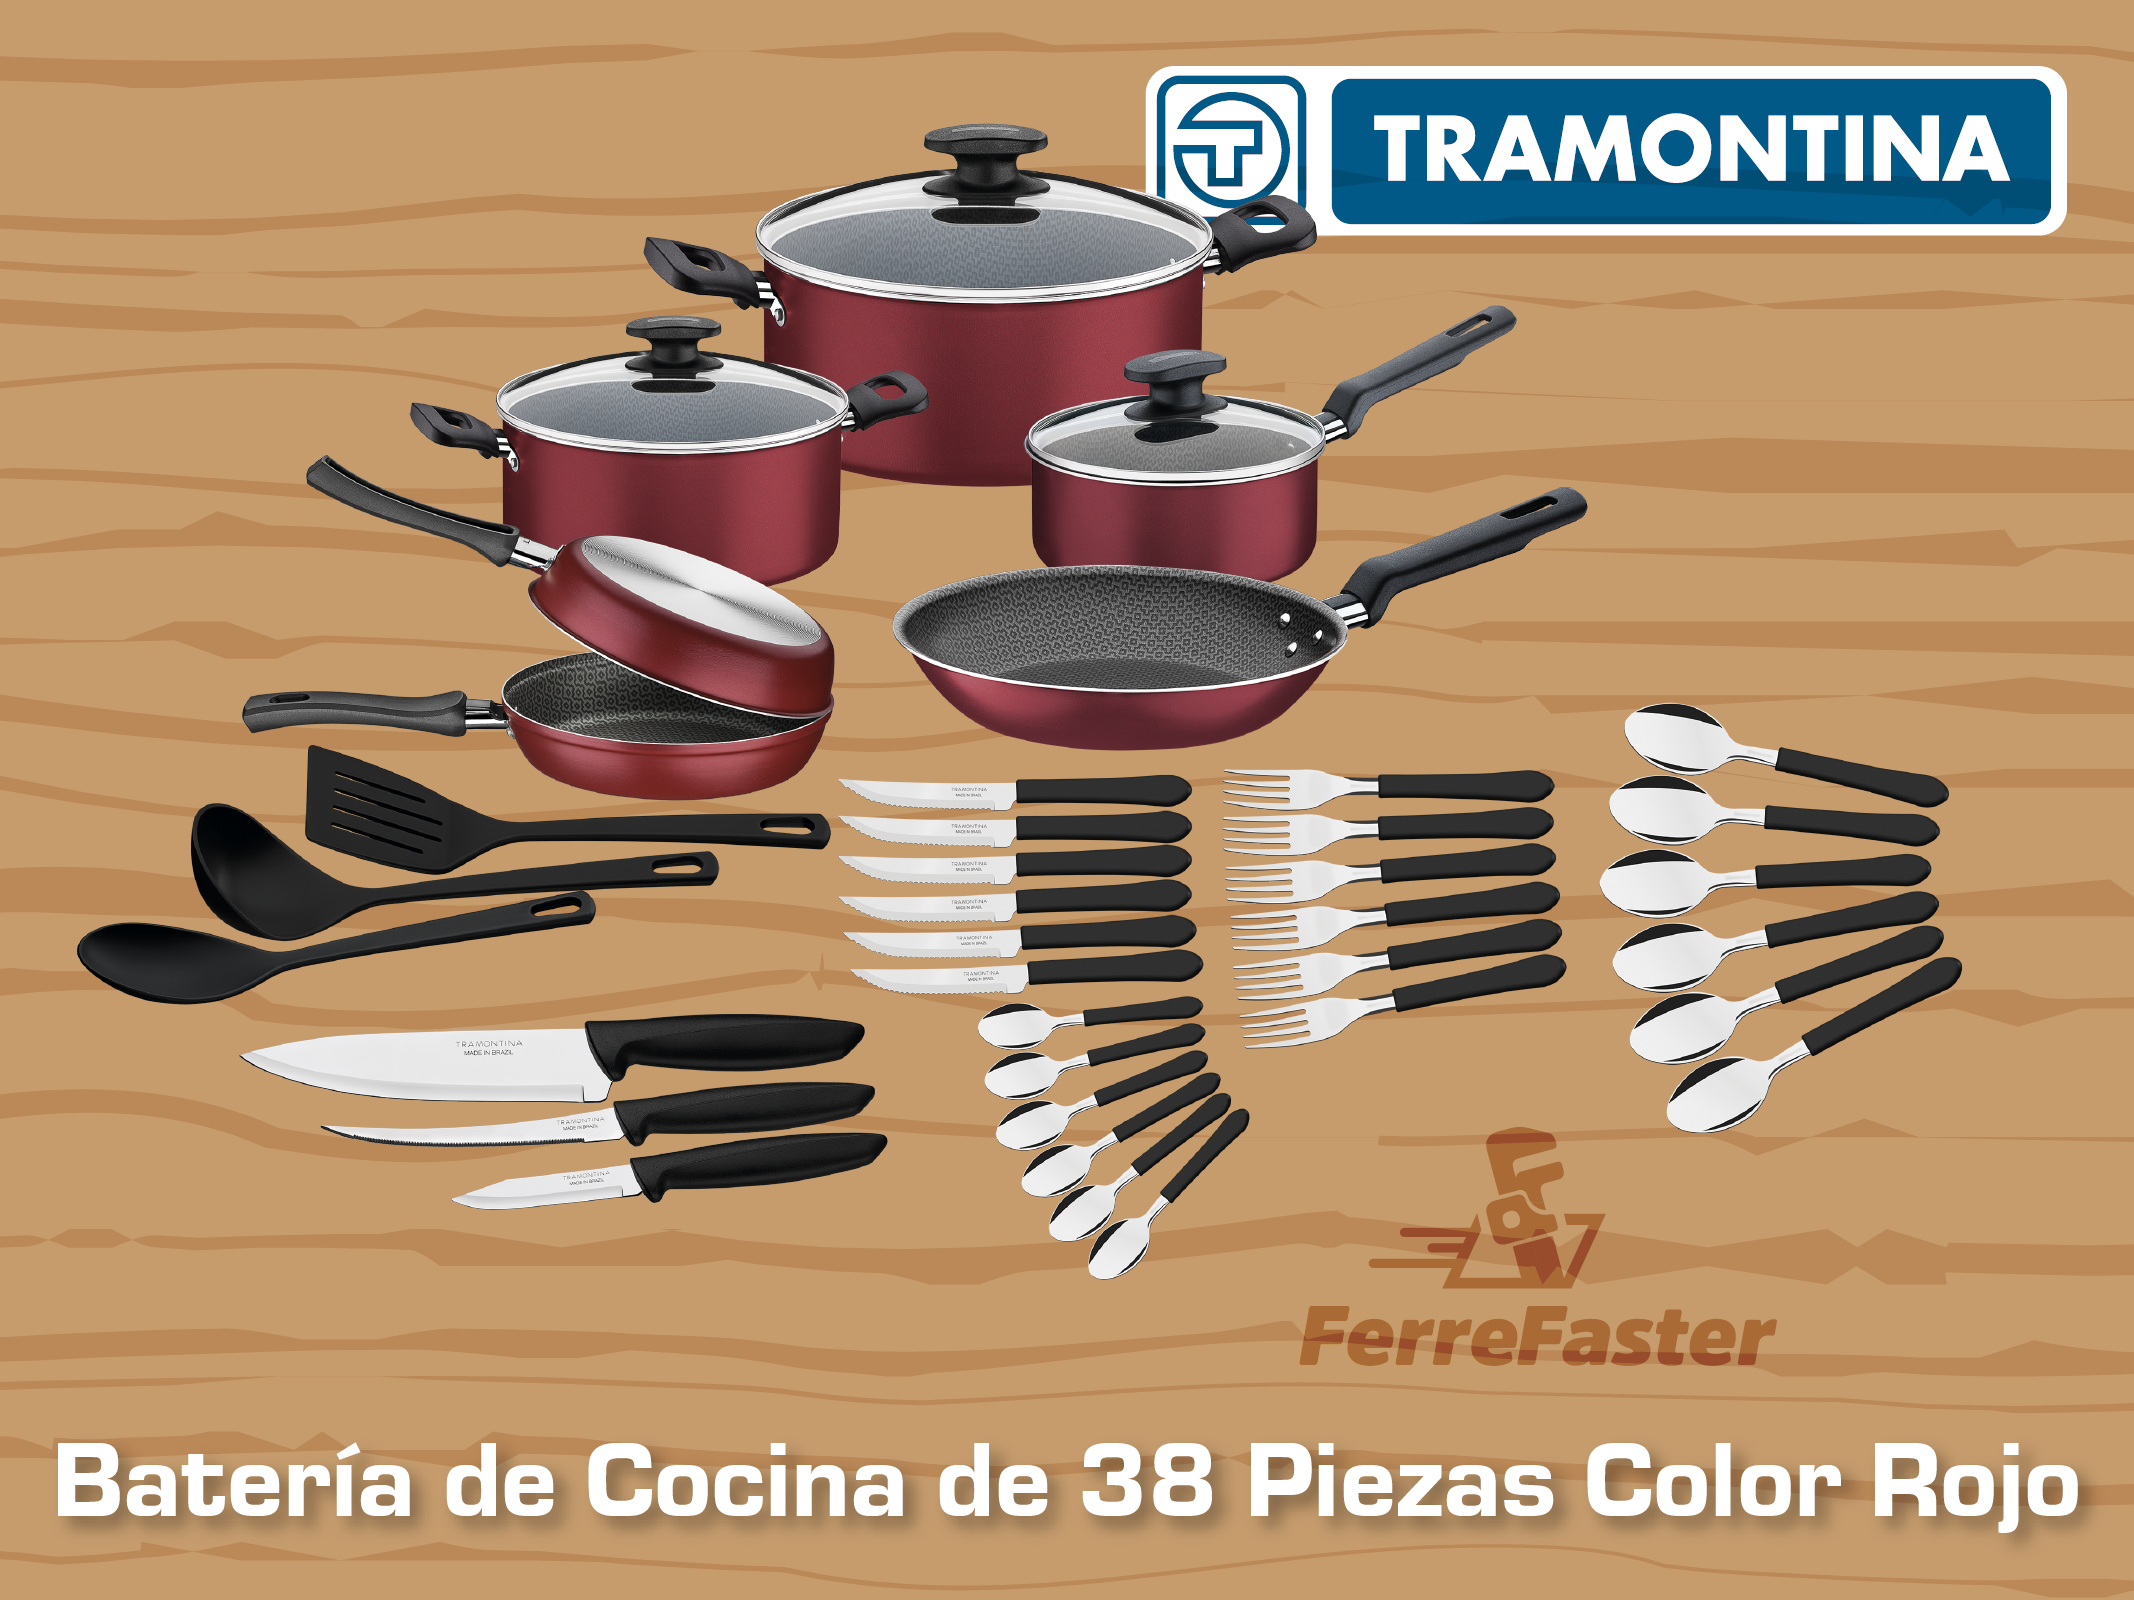 Batería de Cocina Tramontina de 38 Piezas Color Rojo 20399779